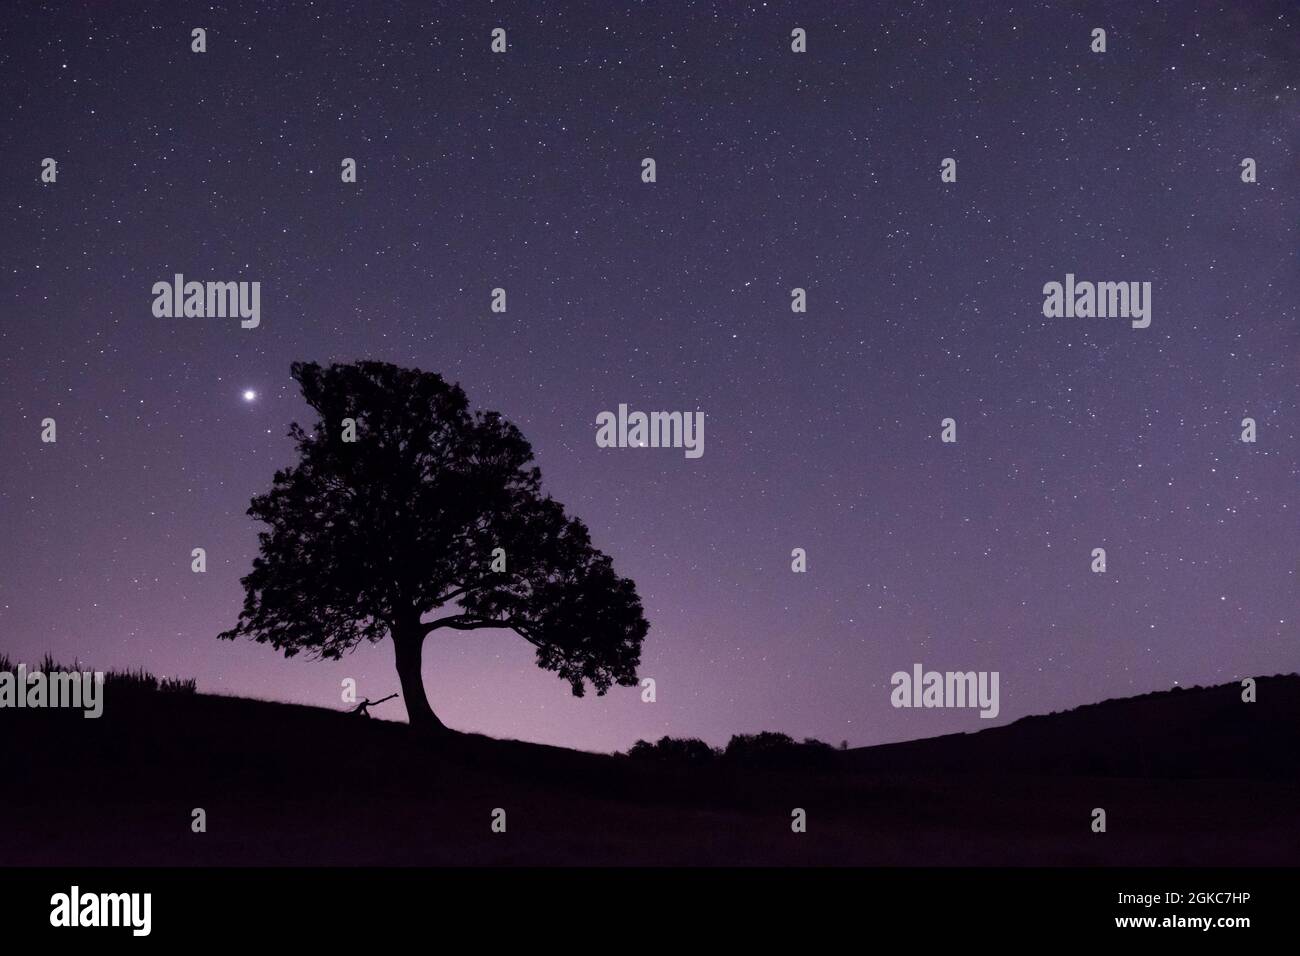 Étoiles et planètes Jupiter et Saturne à côté de la silhouette de l'arbre, Jupiter brillant à gauche de l'arbre, Saturne à droite de l'arbre Sussex, Royaume-Uni, ciel nocturne, Banque D'Images